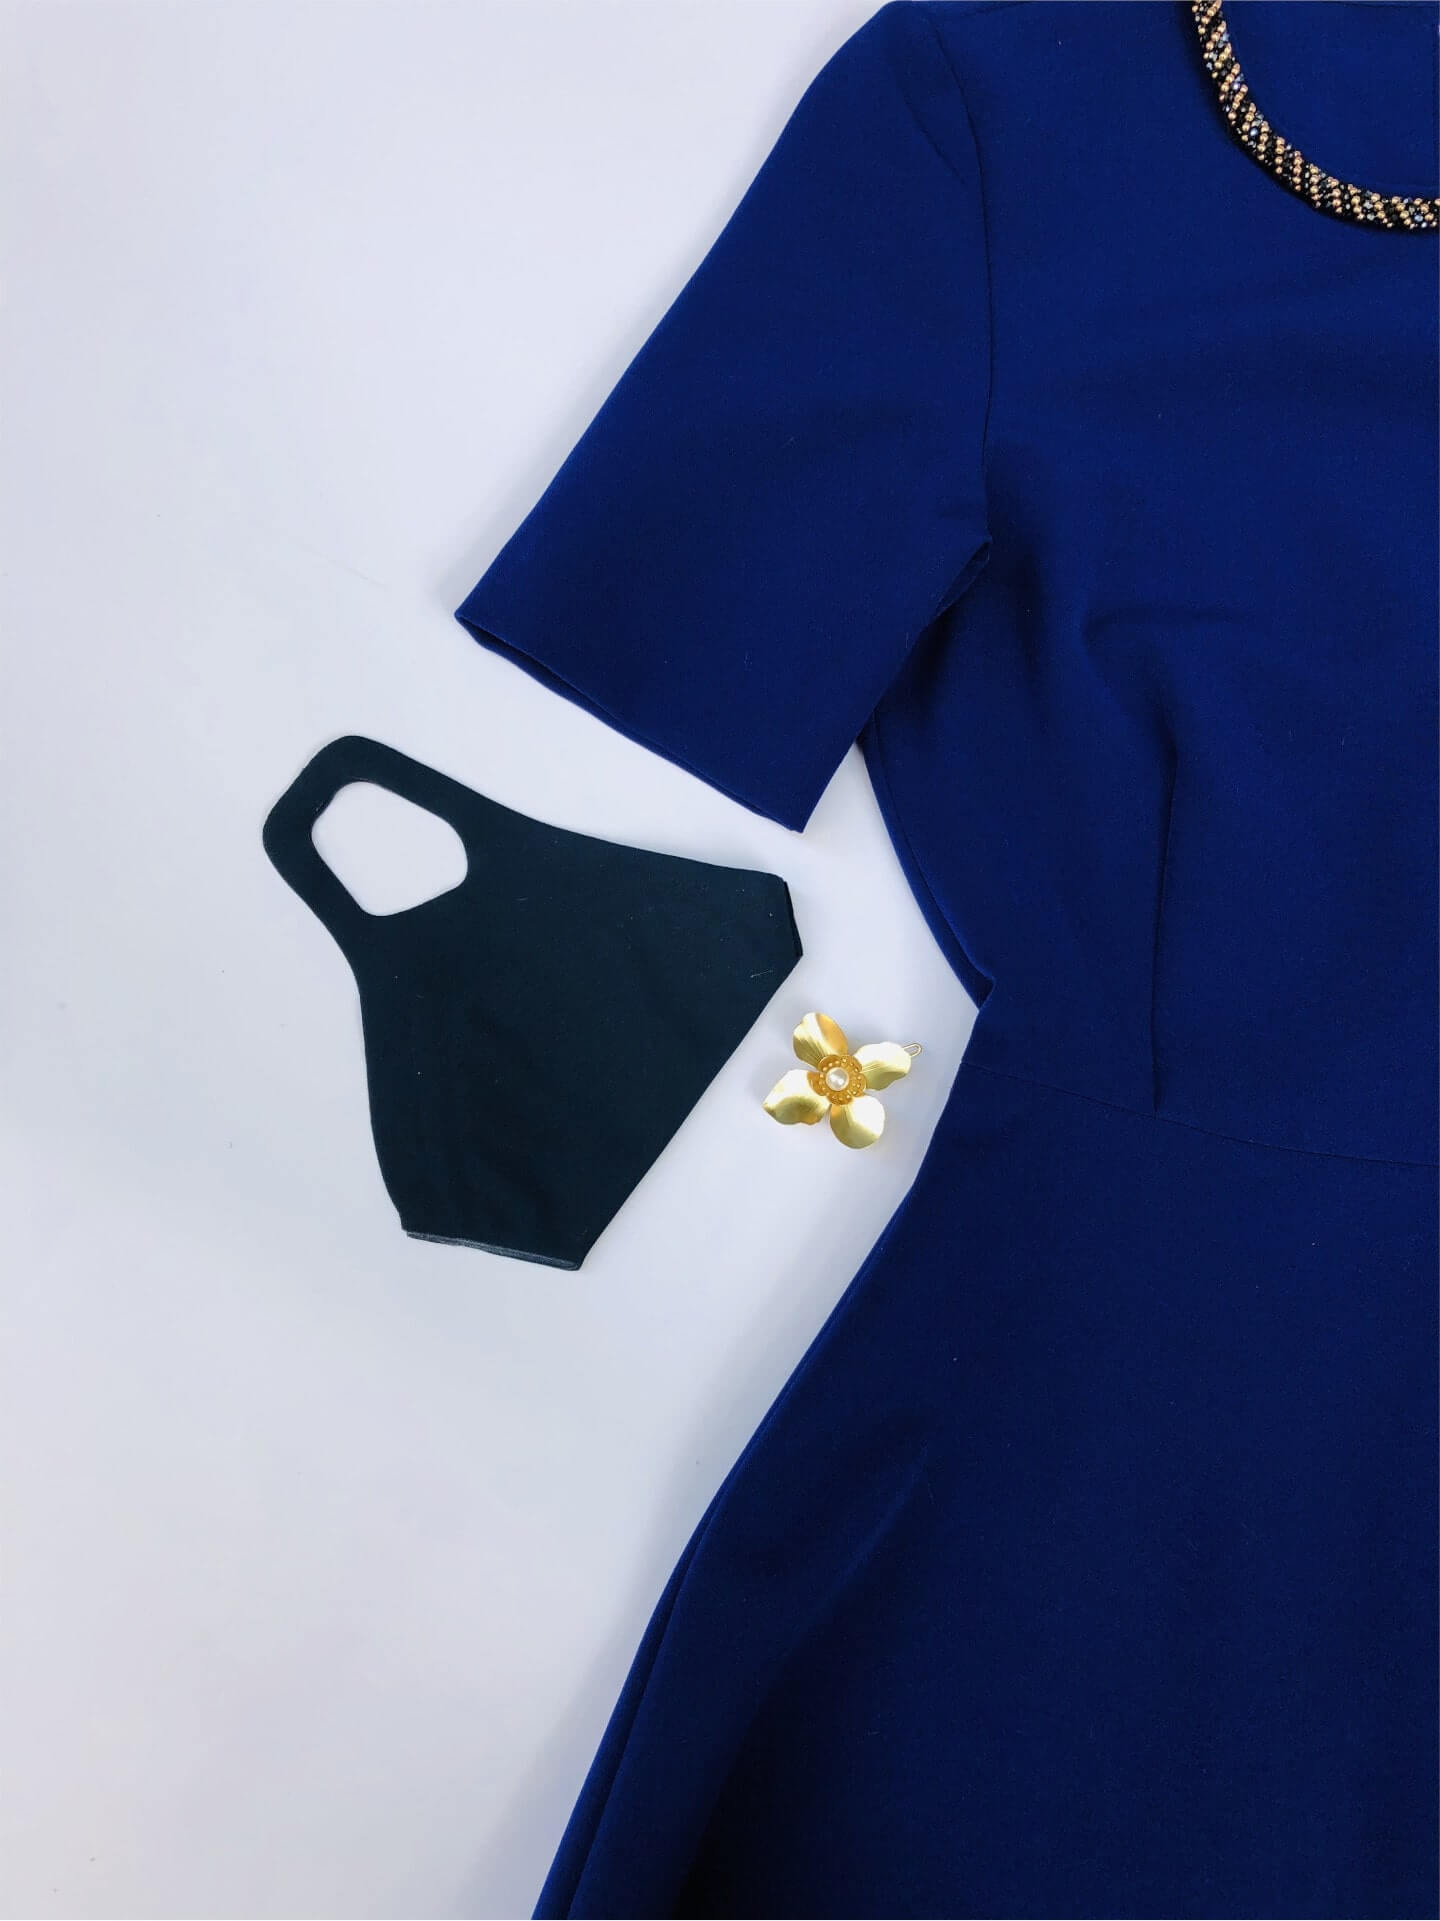 Dunkelblaue Schutzmaske in Kombination mit dem dunkelblauen Kleid